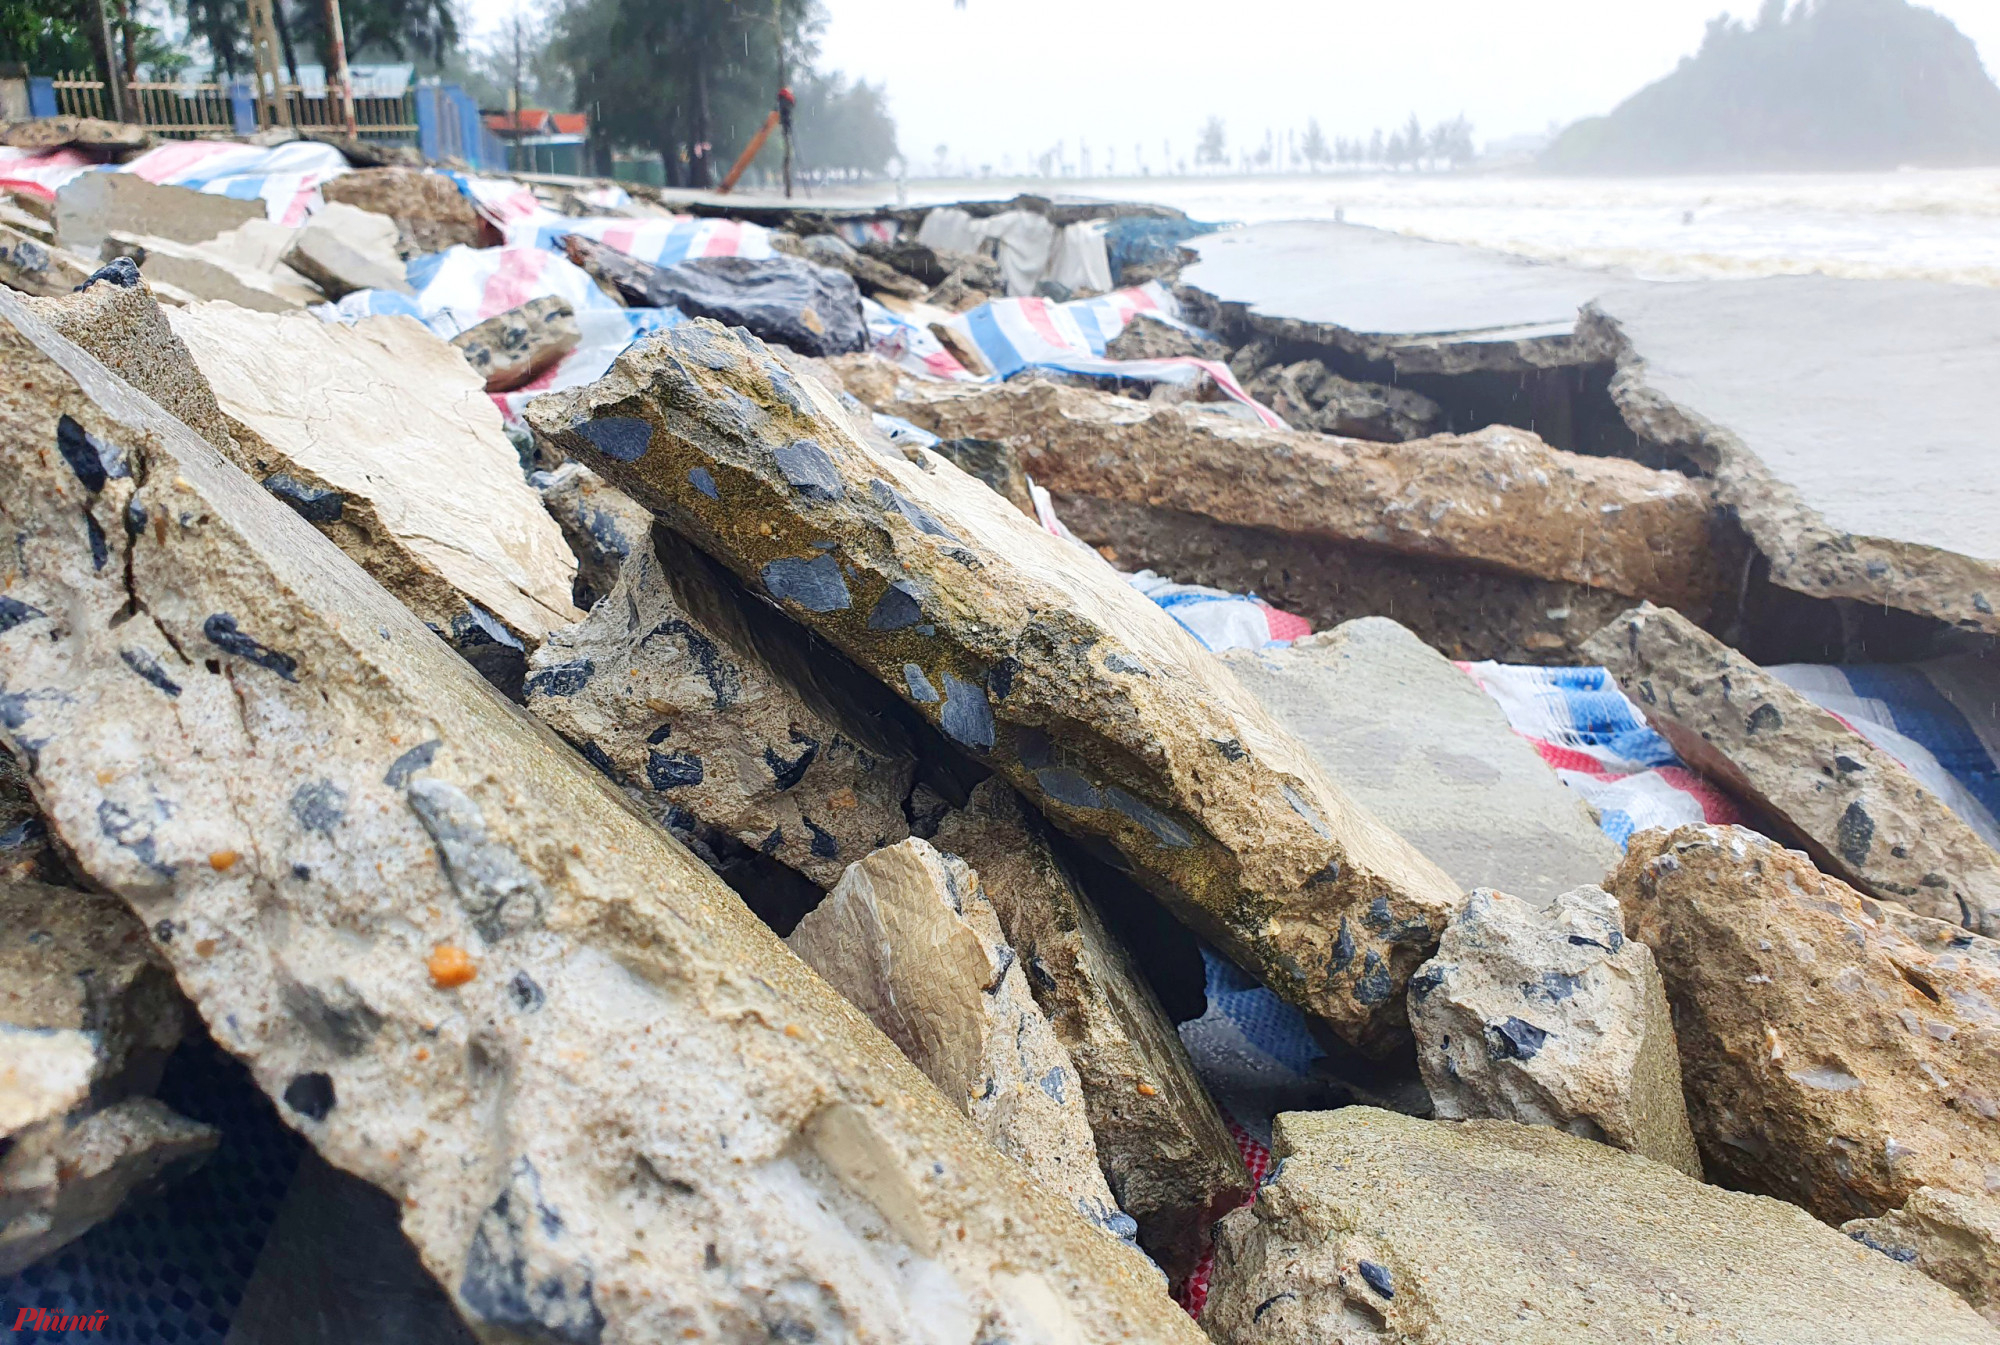 Nhiều mảng bê tông bị sóng hất văng lên bờ, chắn ngang lối dành cho người đi bộ ở ngay mặt tiền một số ki ốt kinh doanh của người dân.